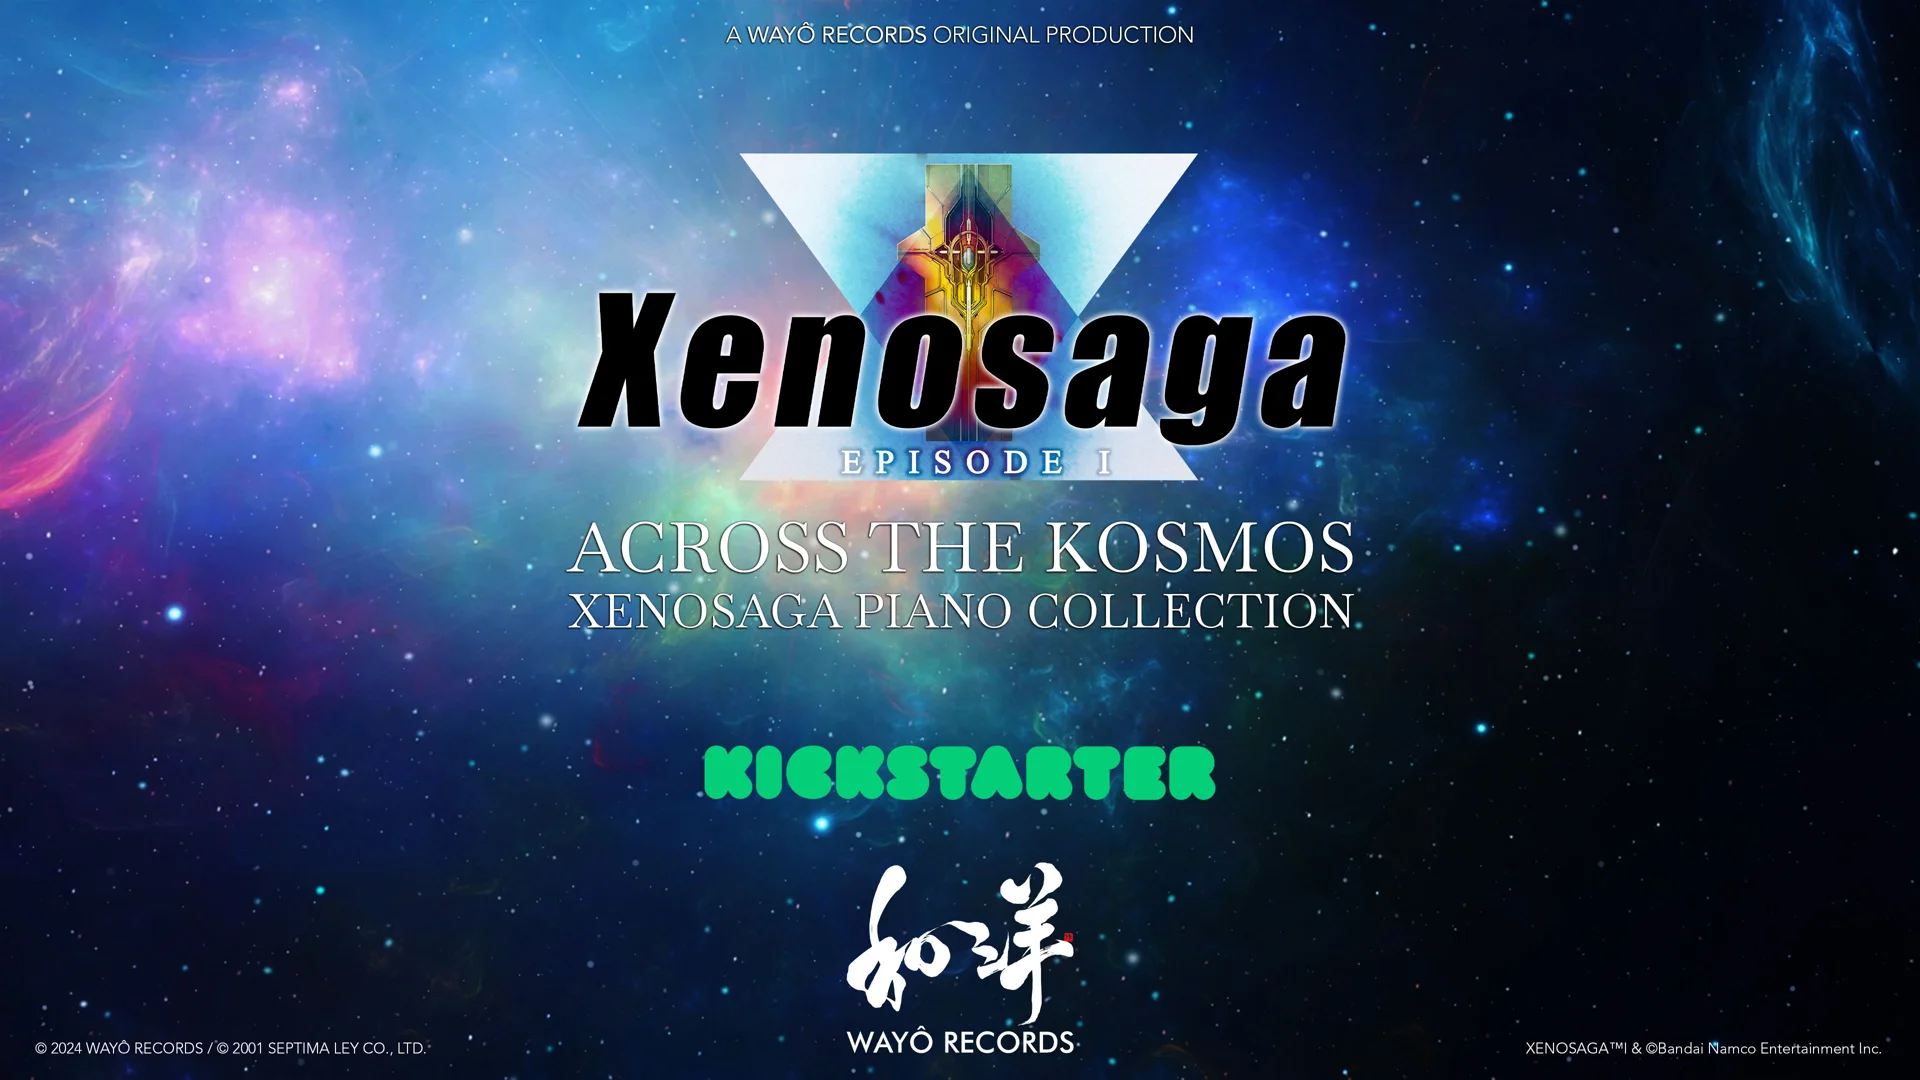 Xenosaga: Across the Kosmos promo art with logos over a space backdrop